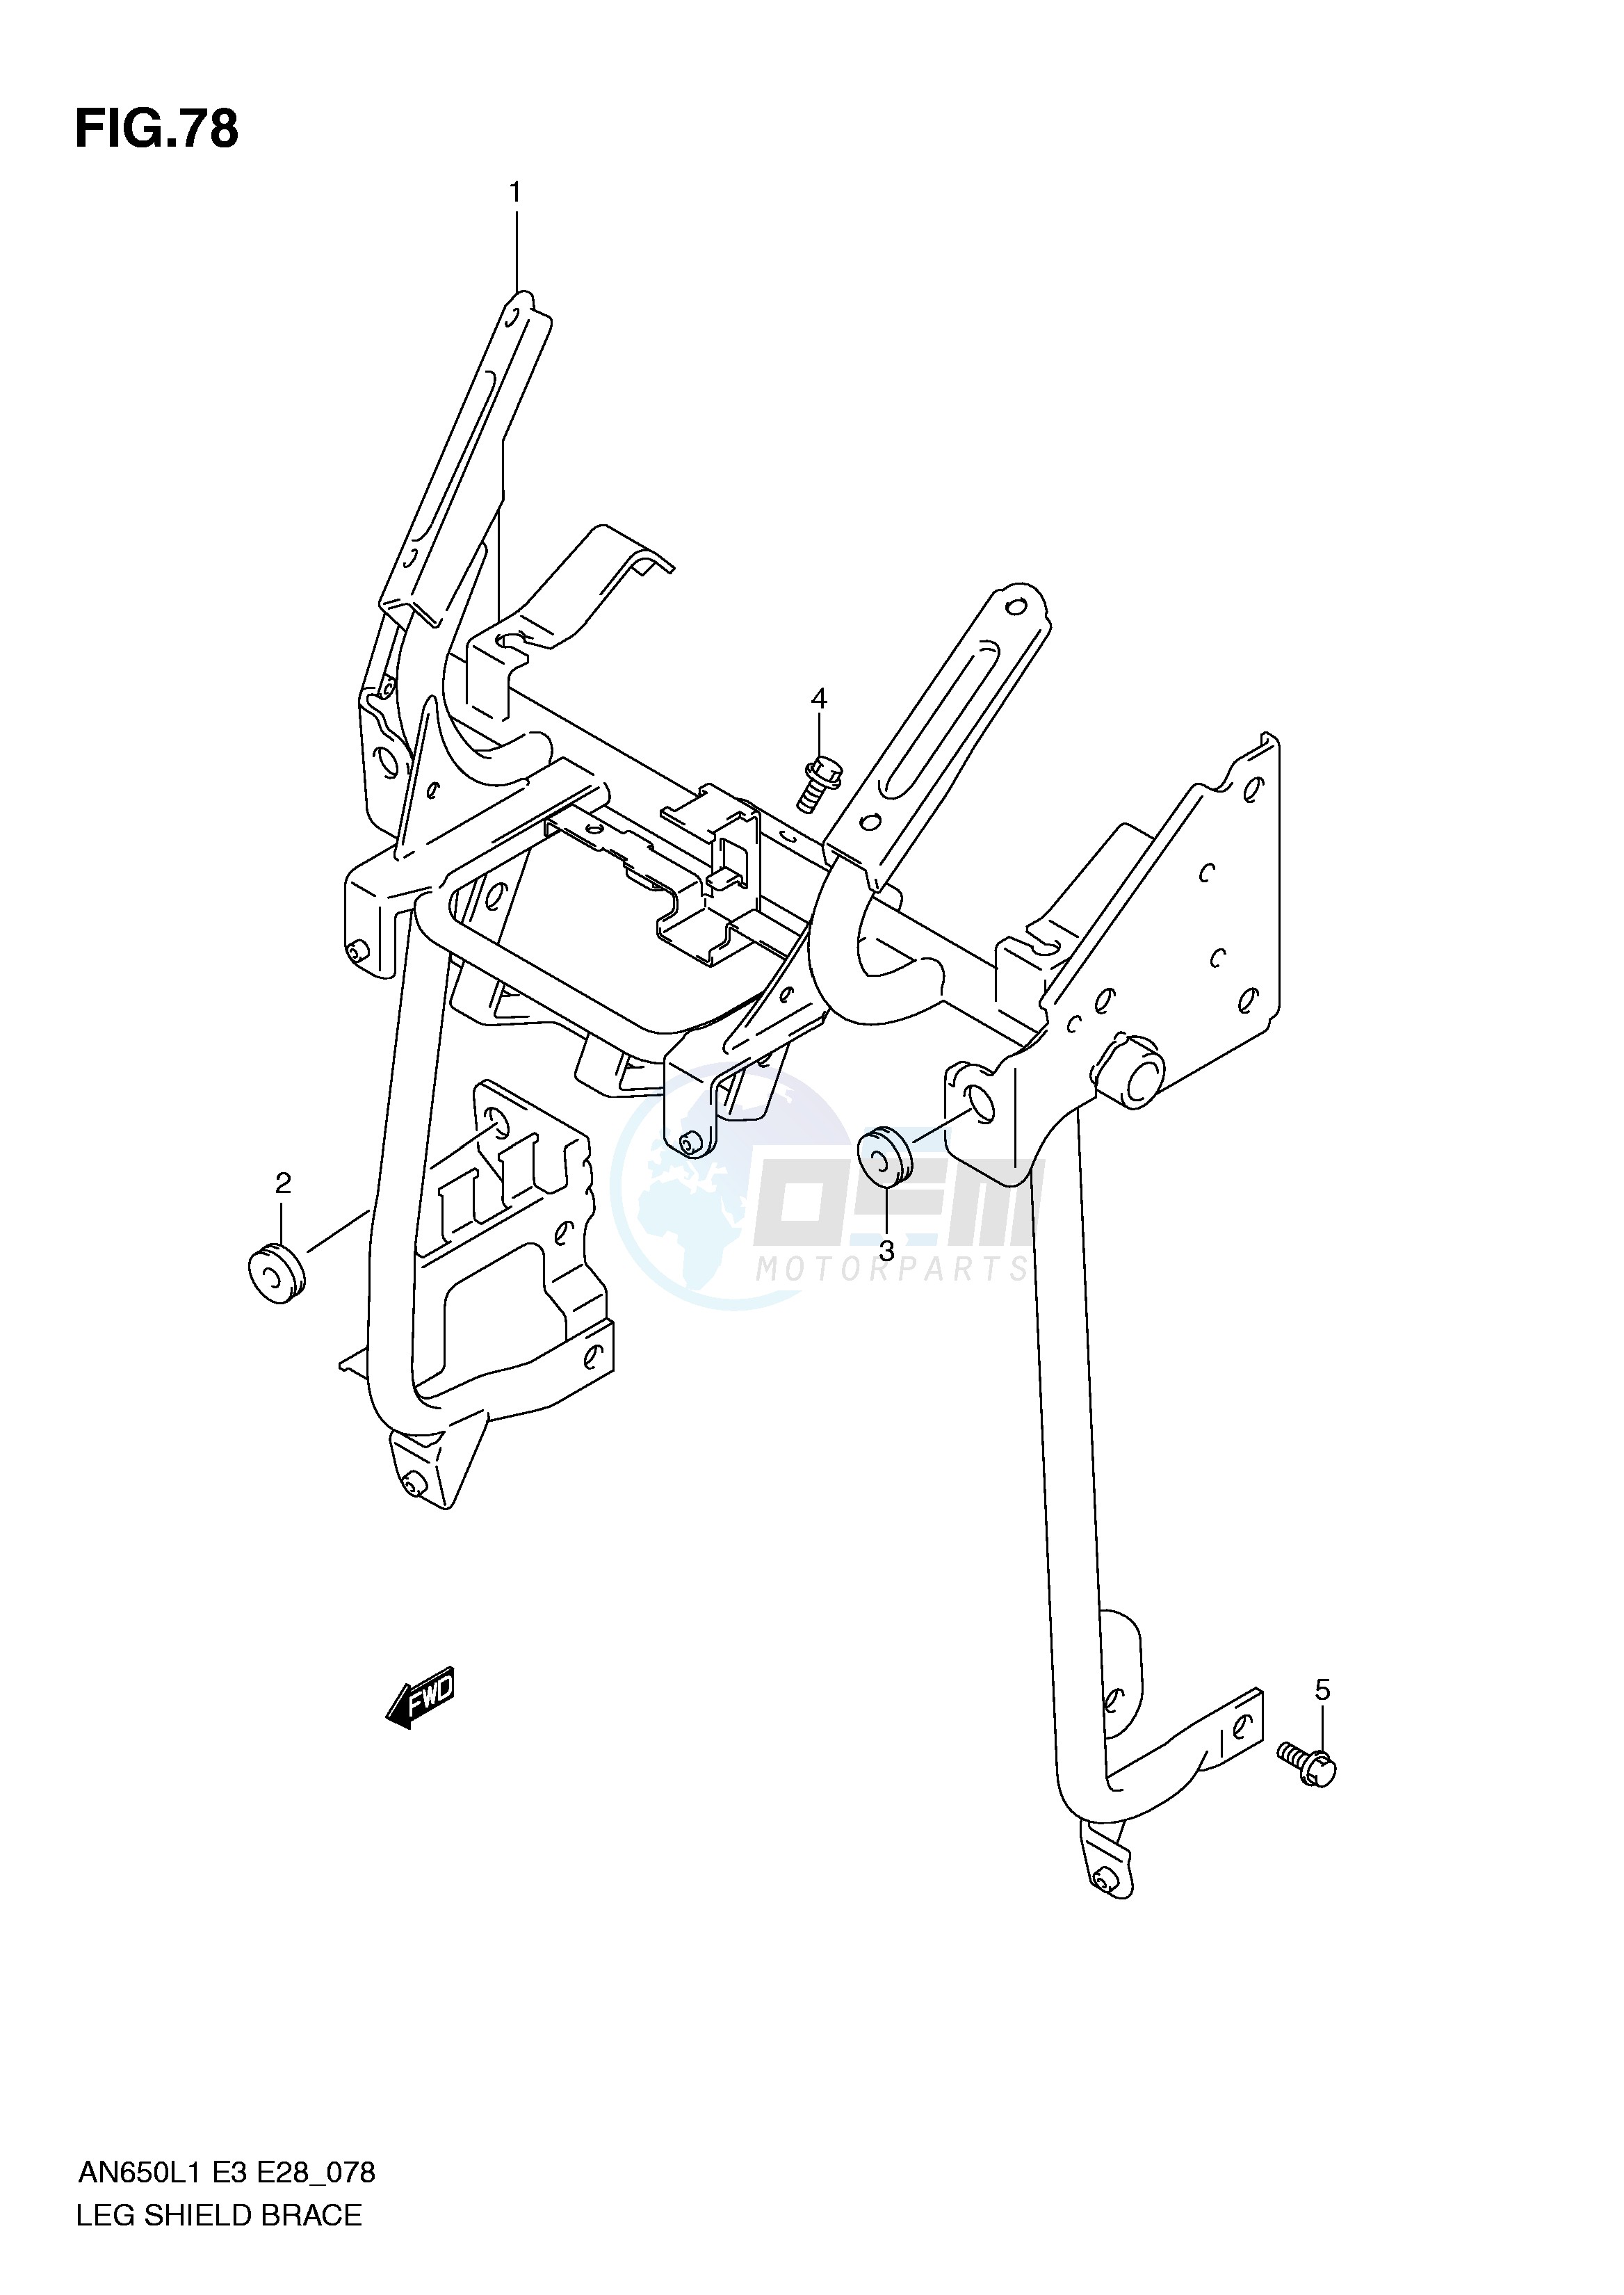 LEG SHIELD BRACE (AN650L1 E3) blueprint